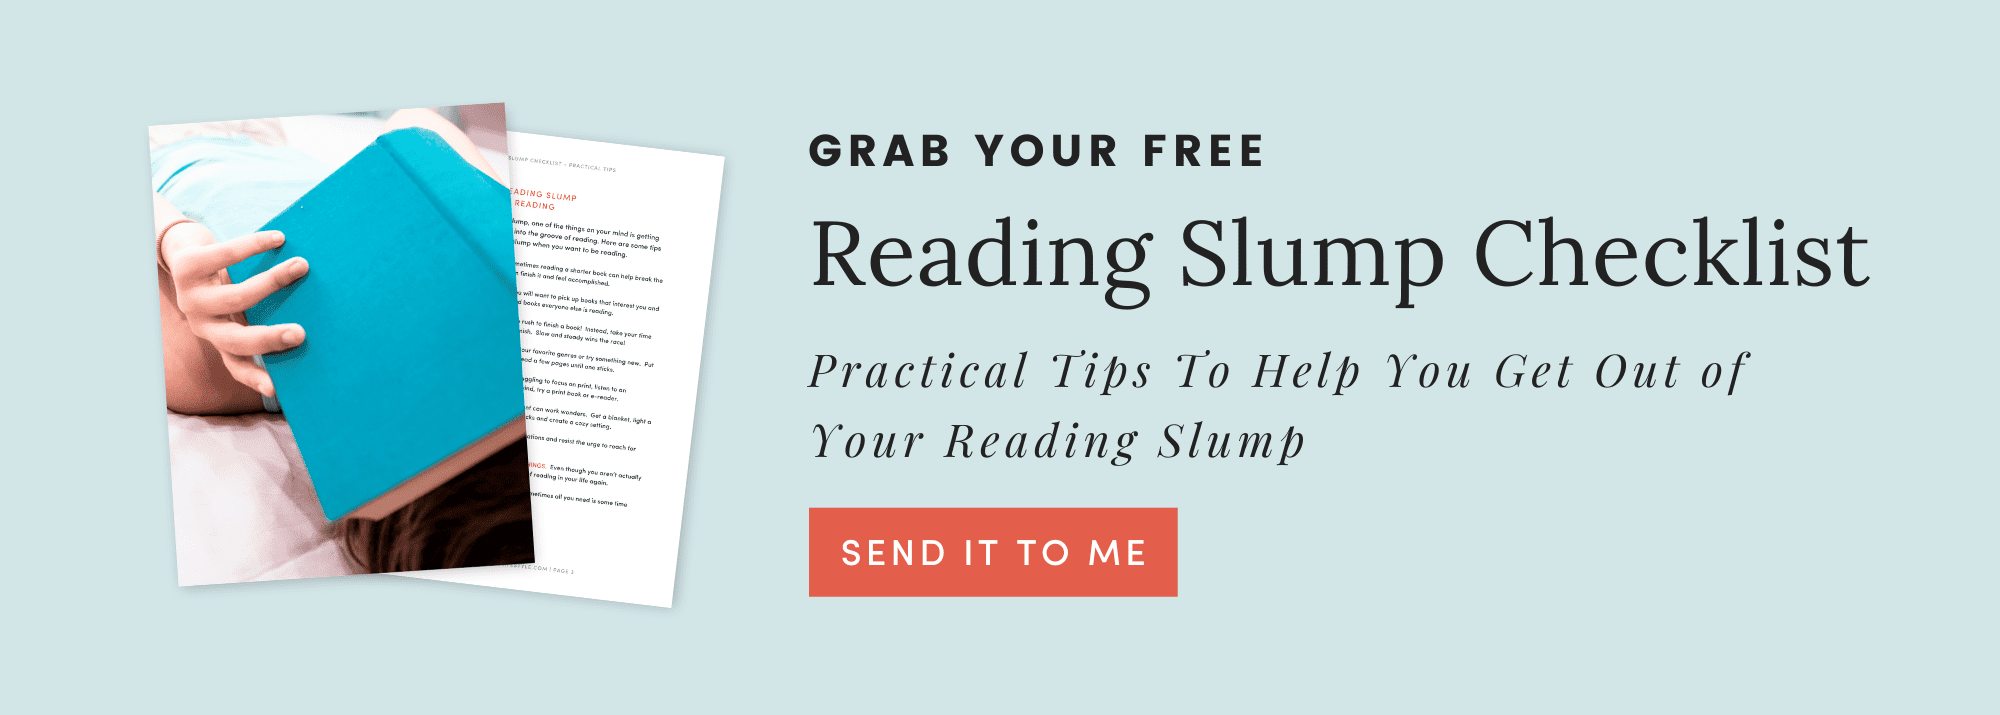 Free Reading Slump Guide